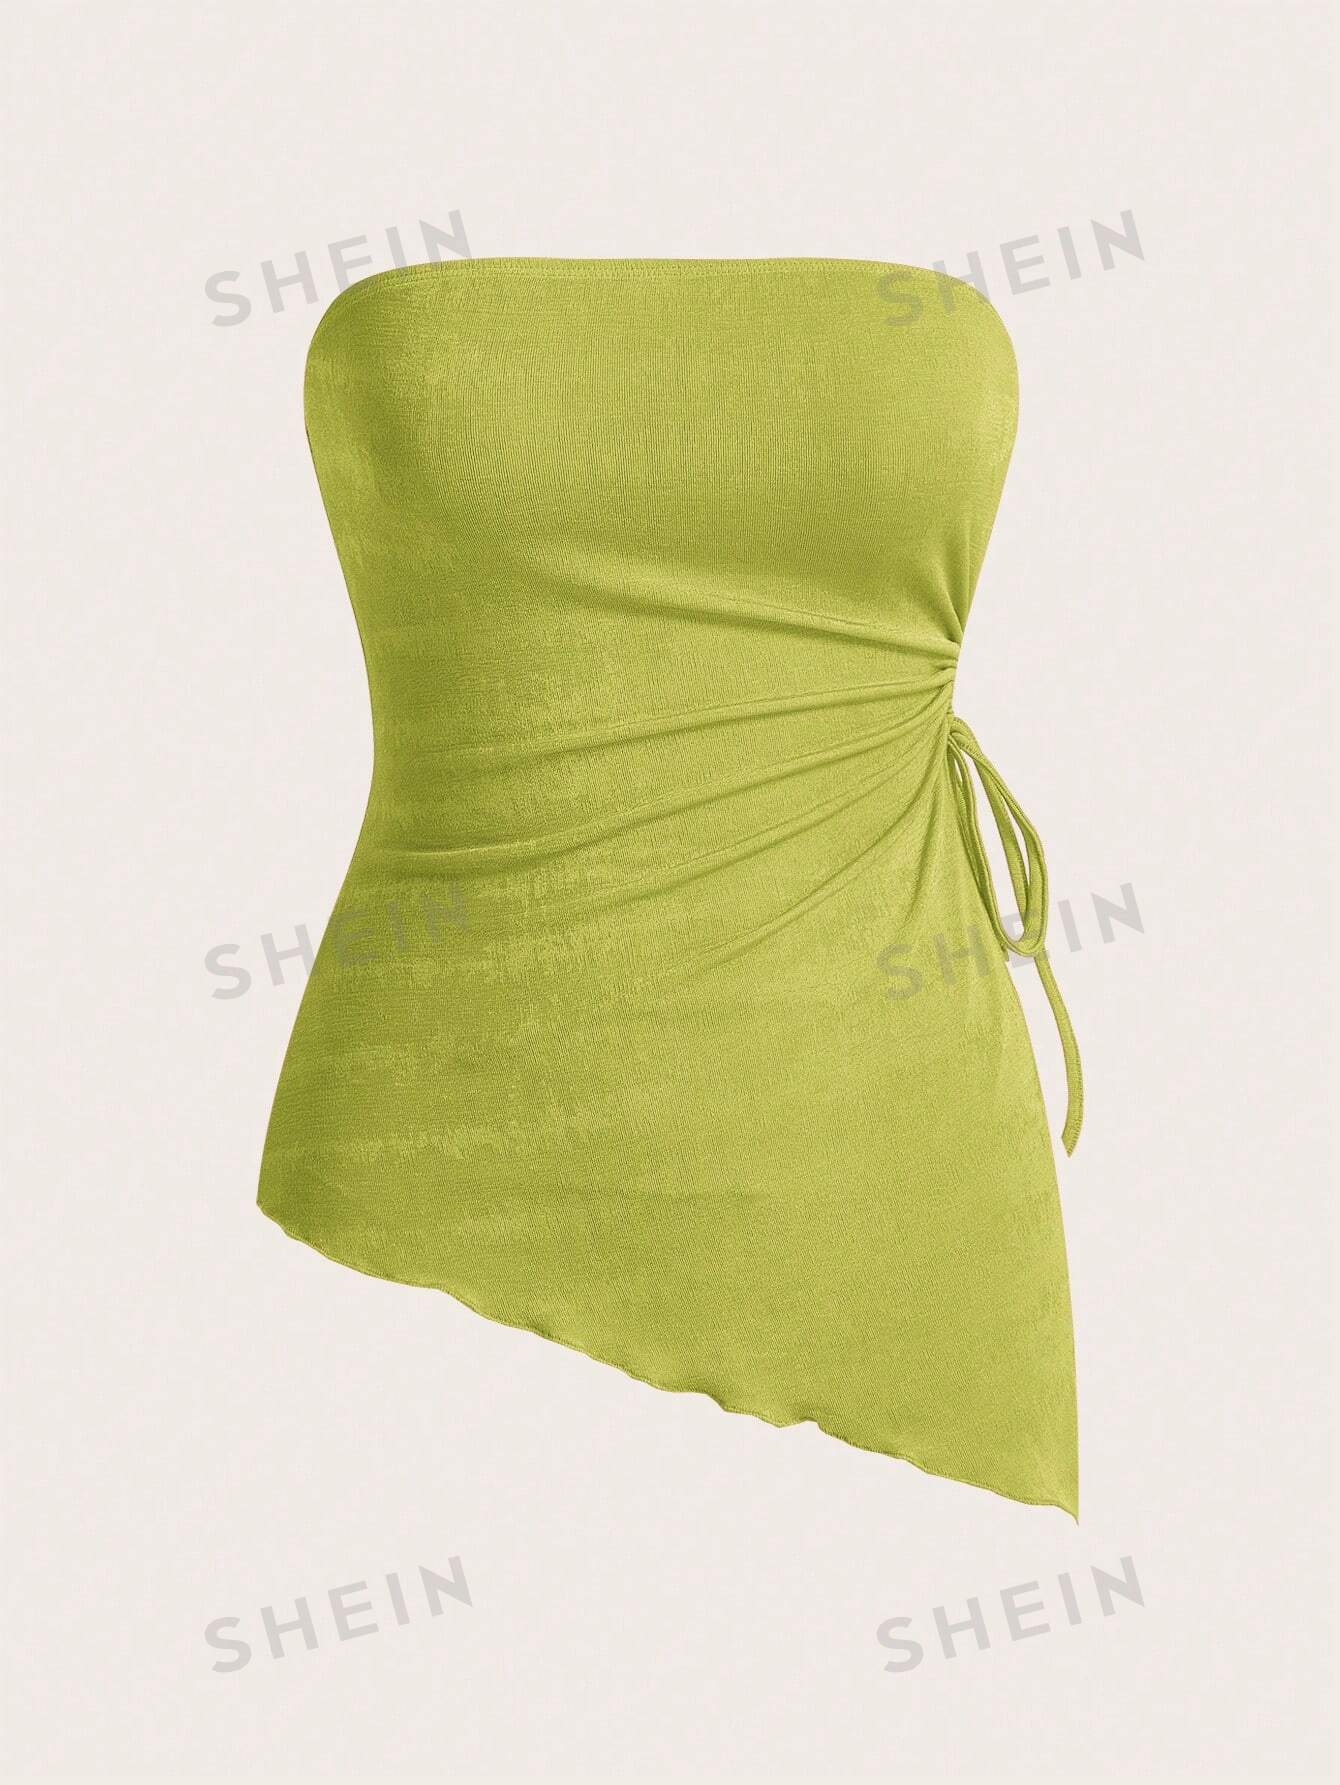 SHEIN MOD Вязаный женский асимметричный топ-бандо с завязками по бокам и неровным подолом, оливково-зеленый